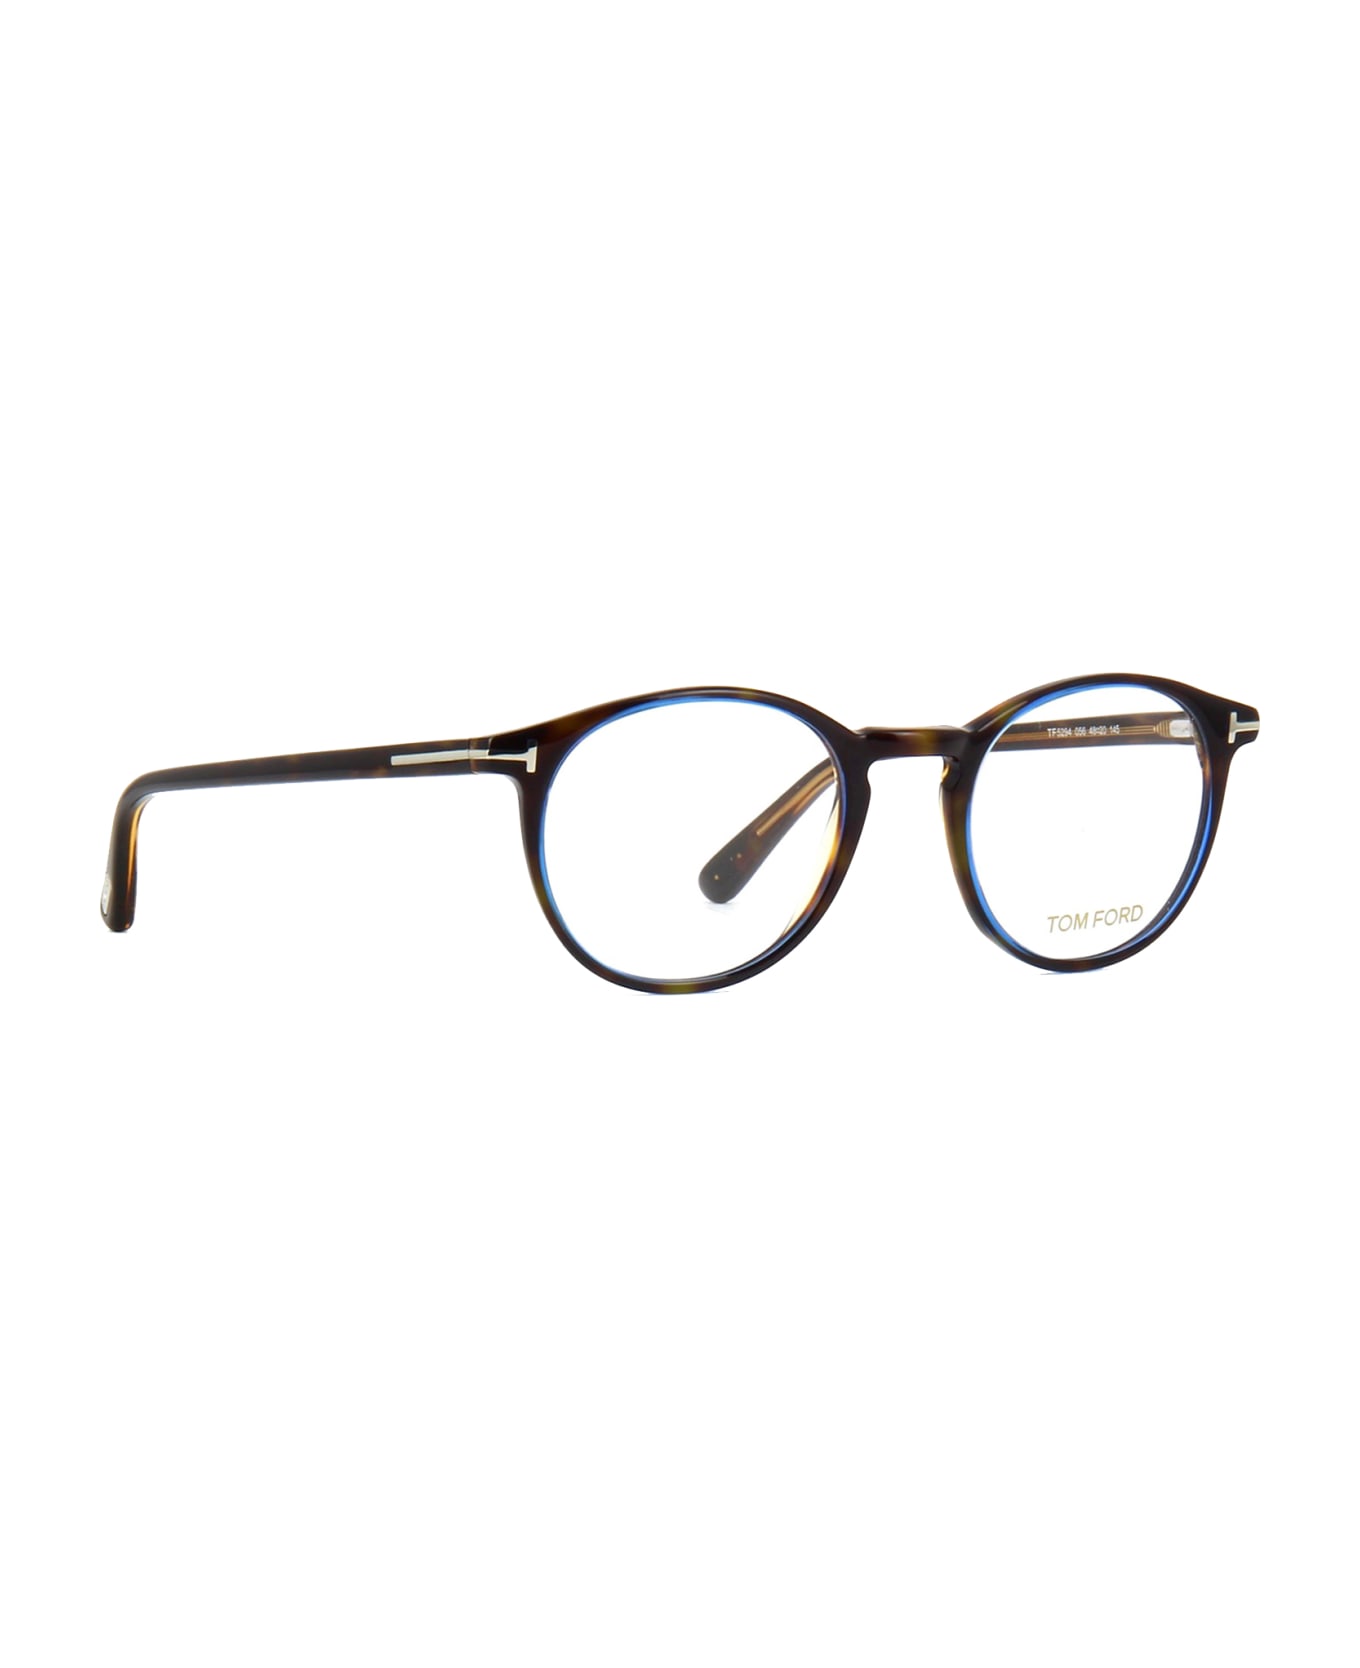 Tom Ford Eyewear Ft5294 056 Glasses - 056